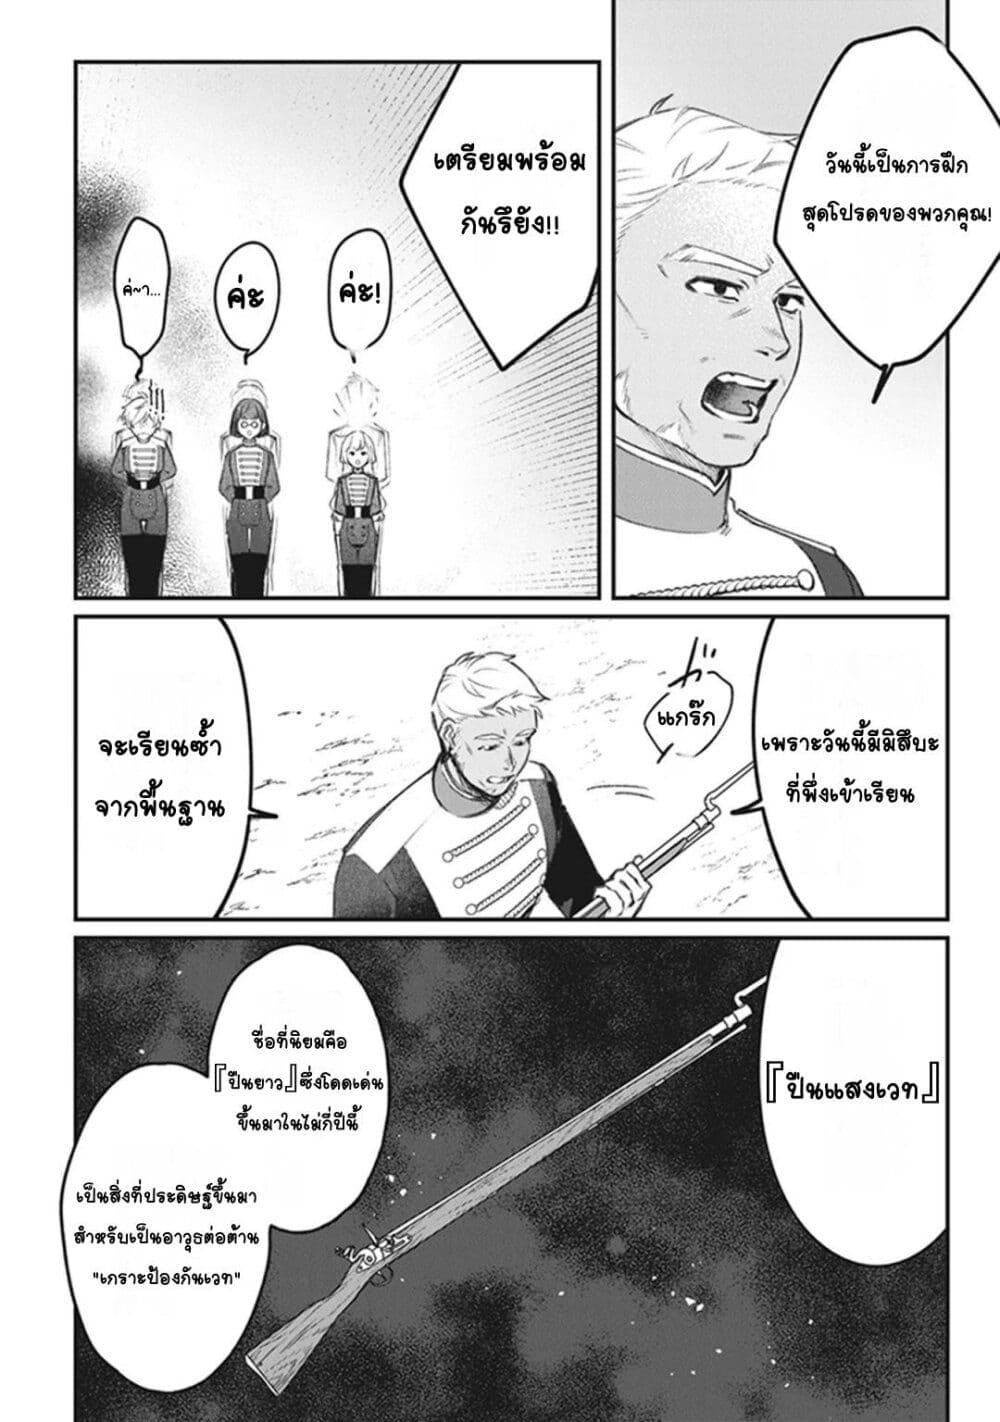 Mitsuba no Monogatari ตอนที่ 5 (4)